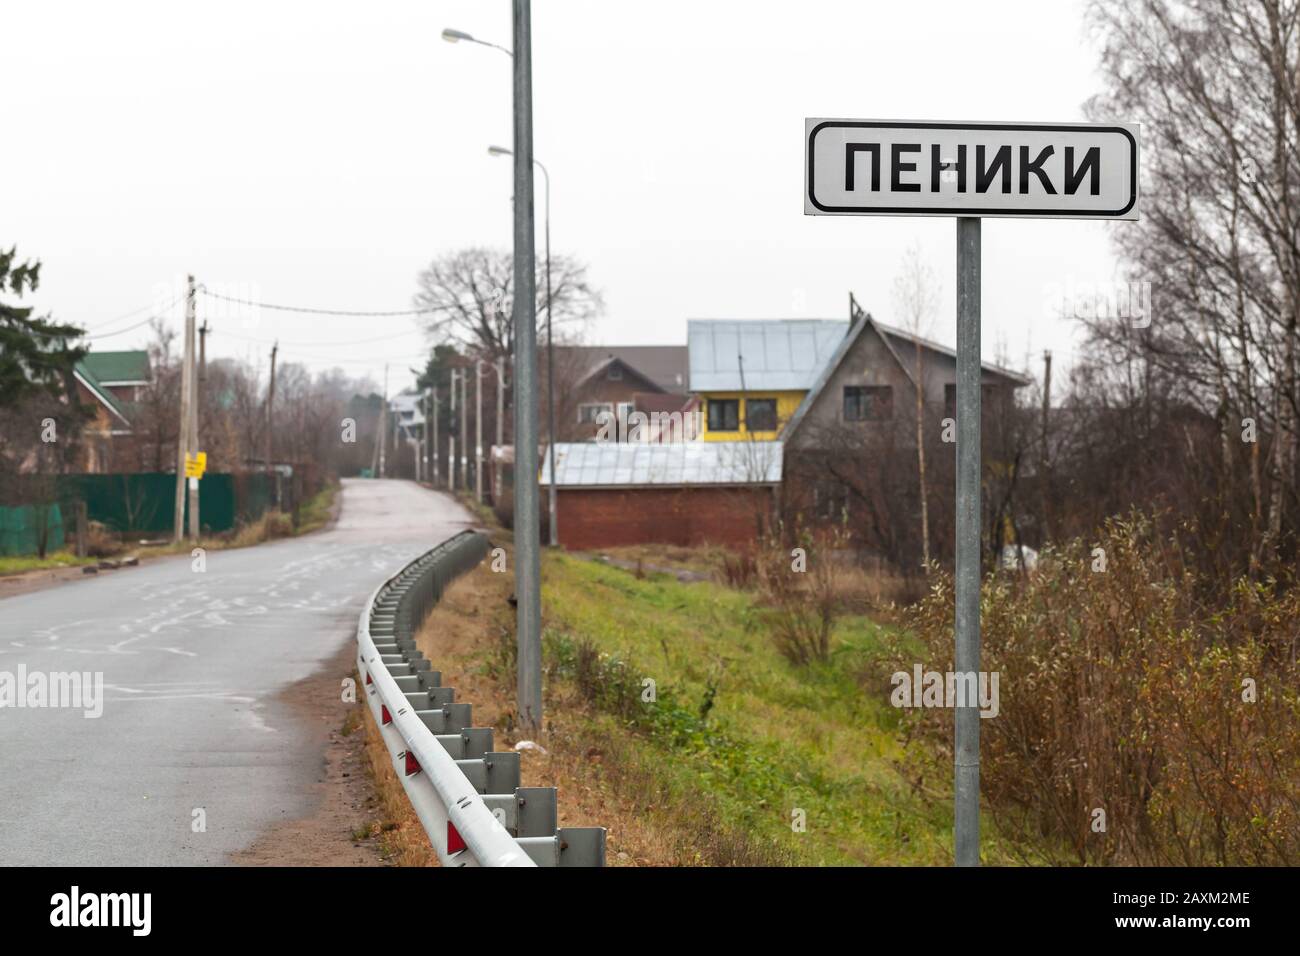 Peniki, Russland - 11. September 2019: Straßenschild mit städtischem Dorfnamen Peniki steht in der Nähe der ländlichen russischen Autobahn Stockfoto